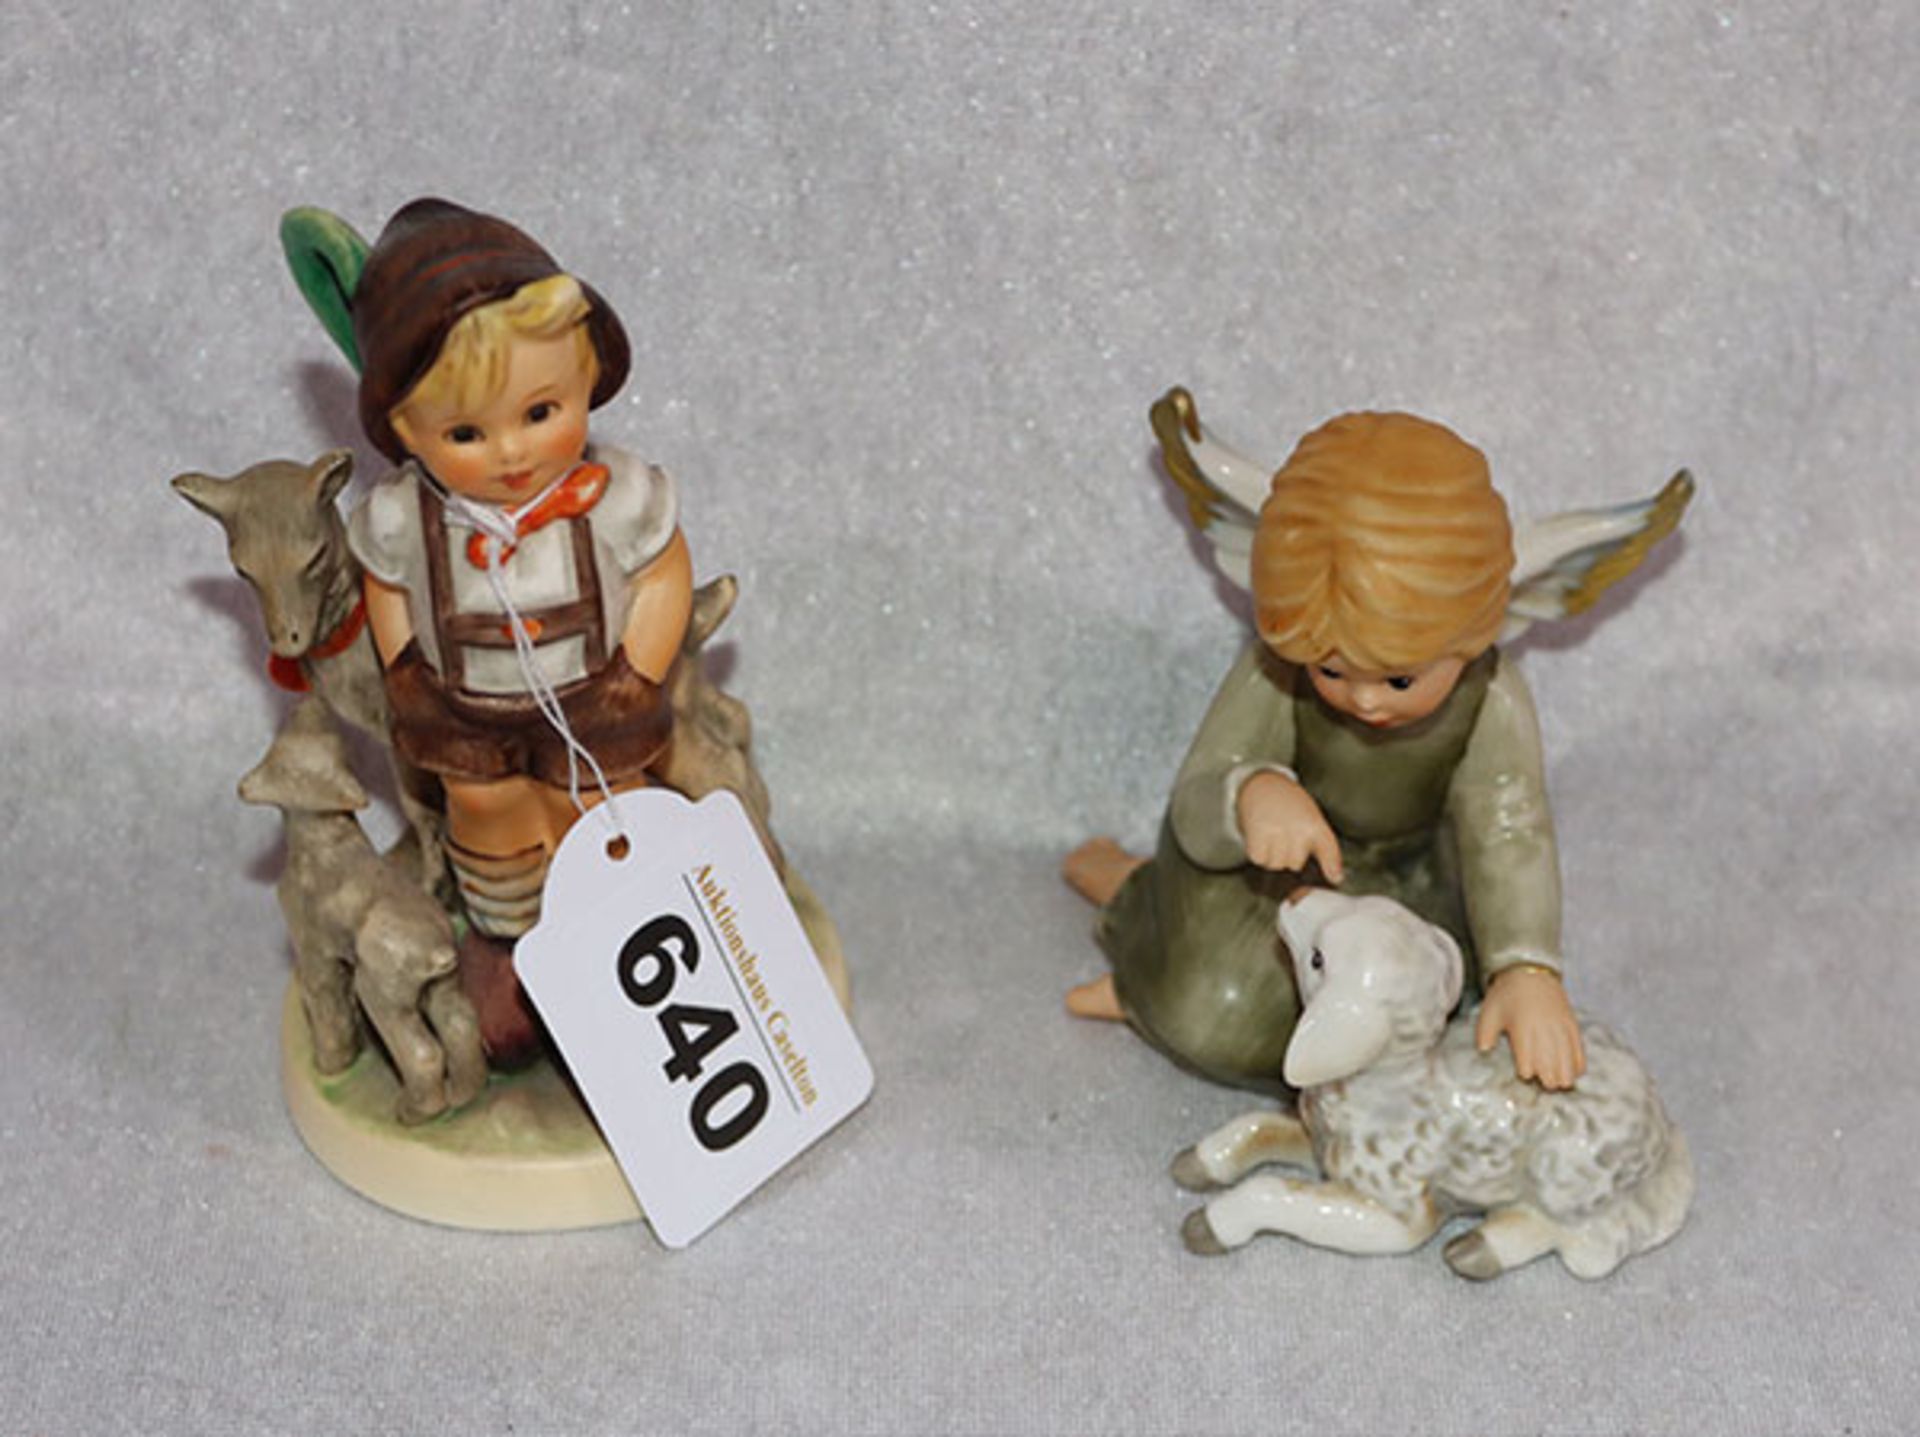 Goebel Hummel Figur 'Ziegenhirte', Nr. 200 00, H 12 cm, und Goebel Figur 'Engel mit Schaf', Nr. 41